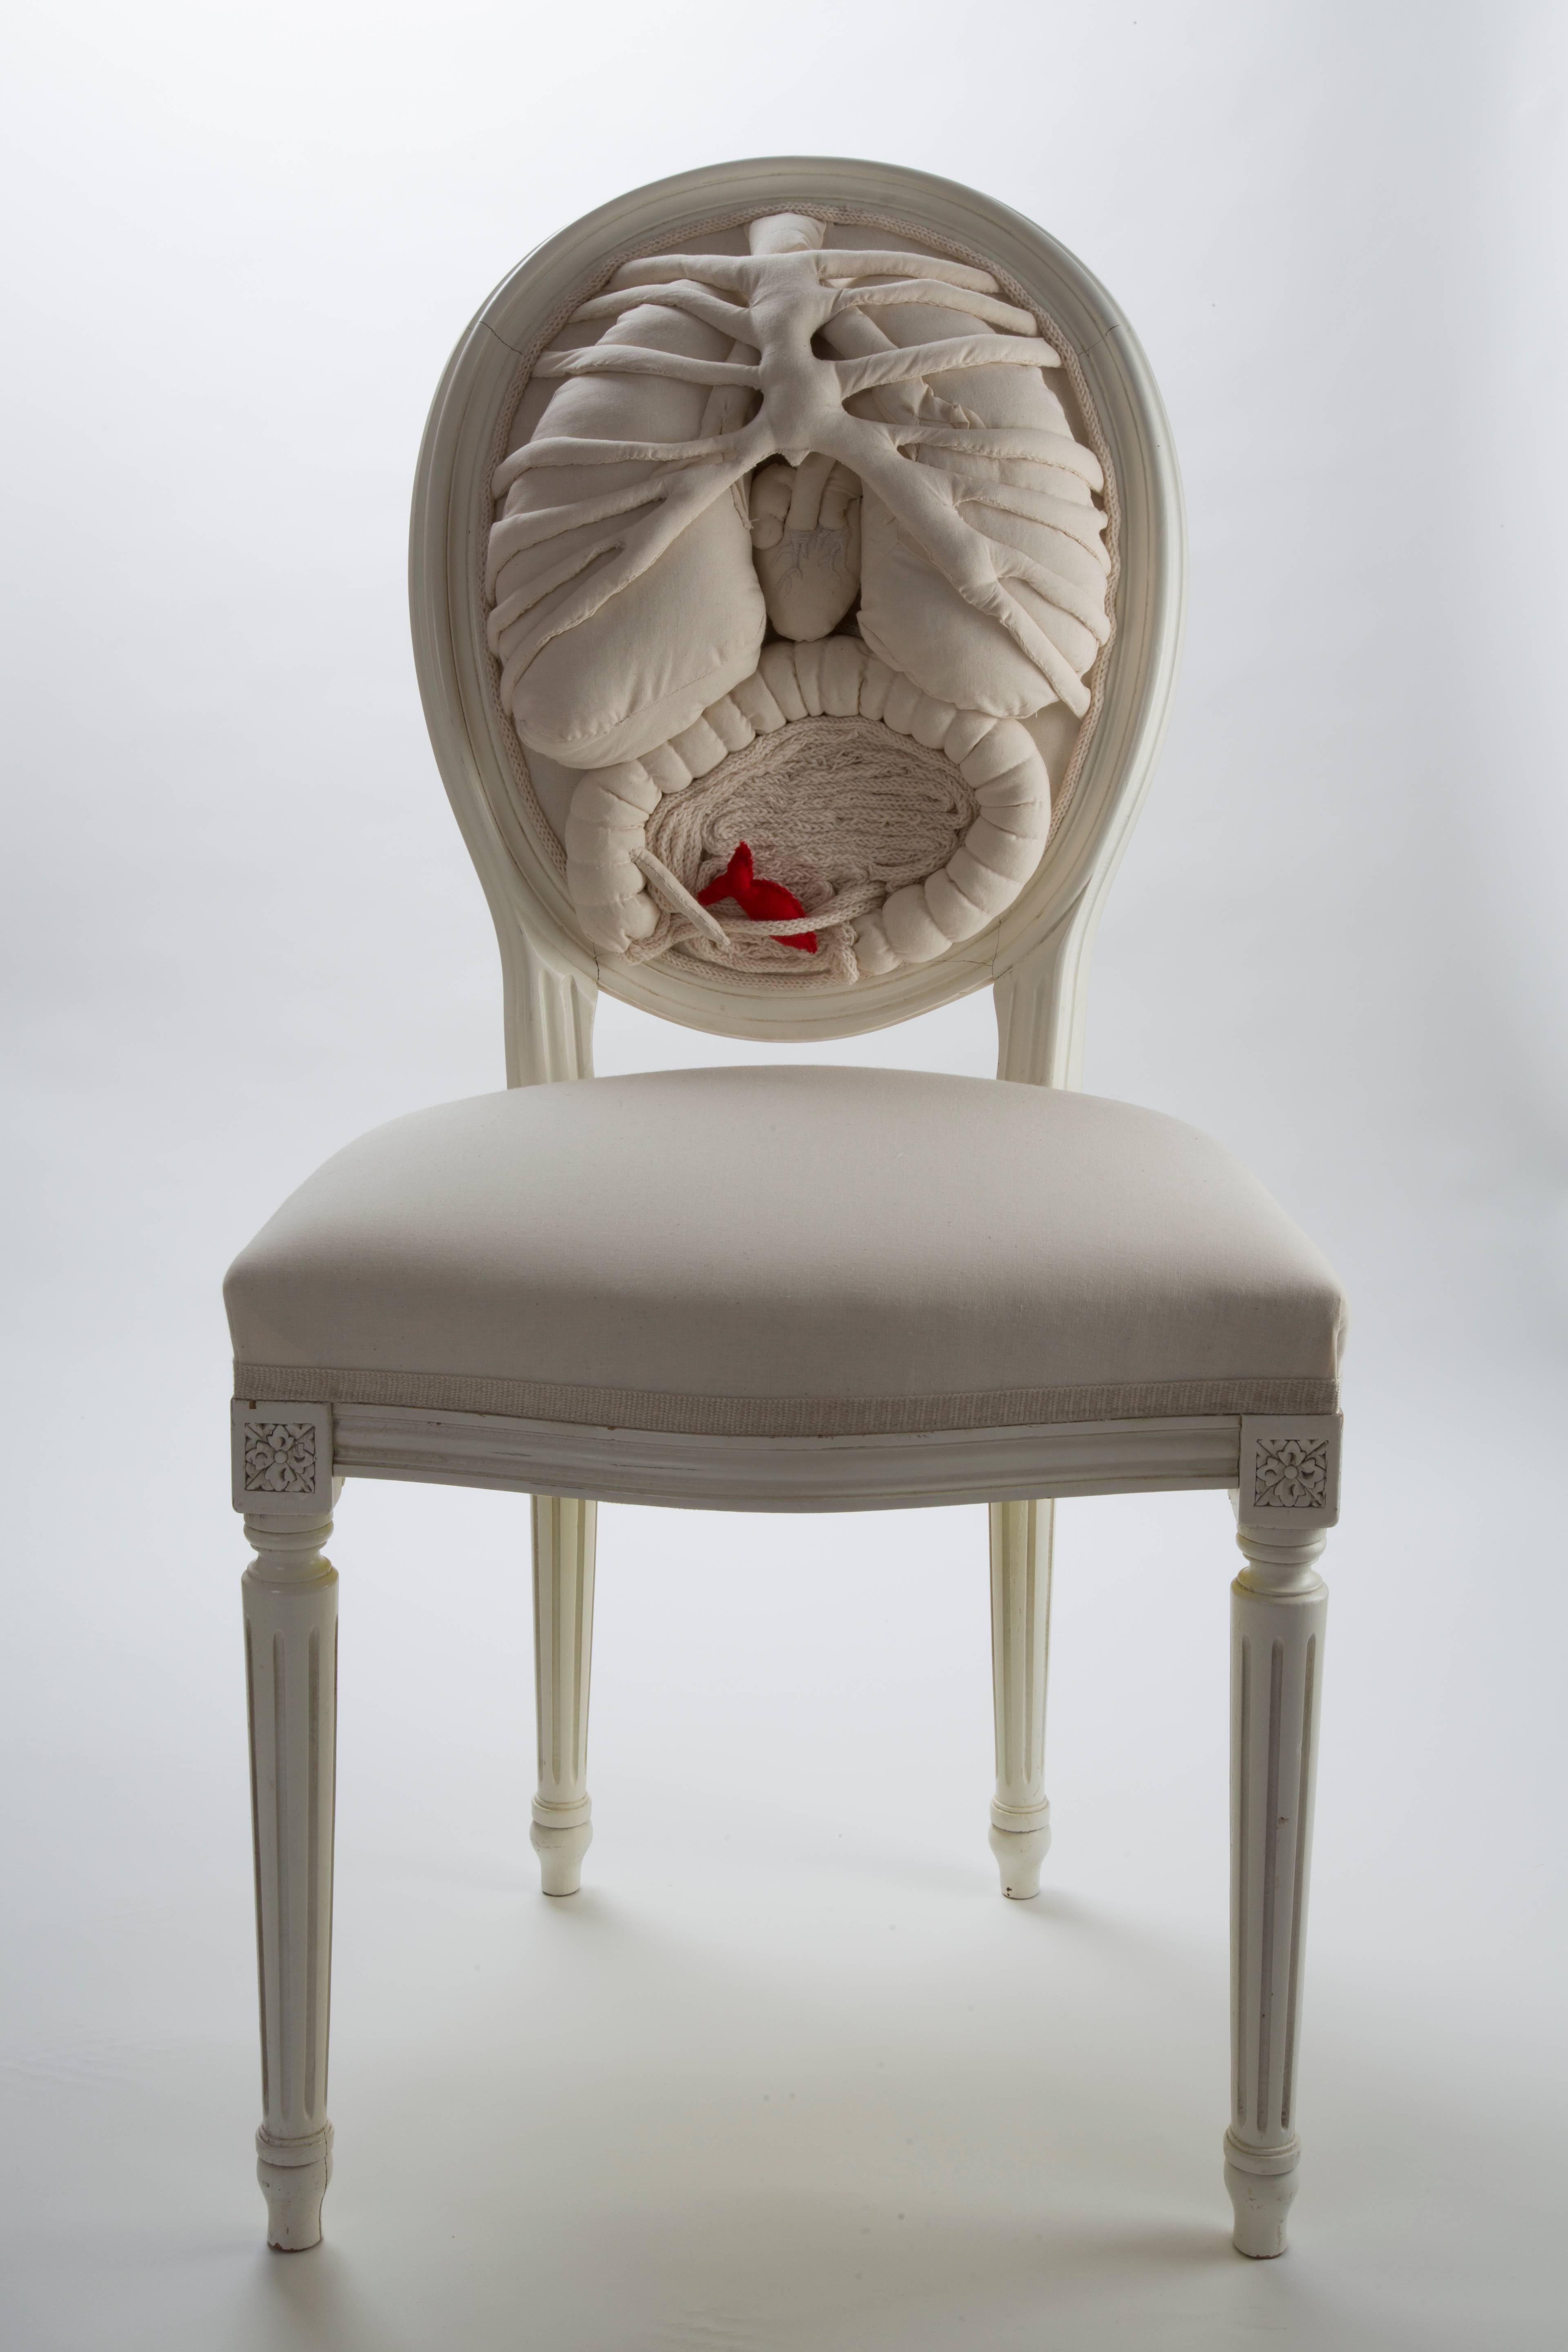 Incroyable chaise blanche anatomique unique en son genre
par un artiste français.
Brodé à la main dans une chaise blanche de style Louis XVI en bois de hêtre.
Ces œuvres d'art sont pleines de poésie, de messages cachés et de créativité.